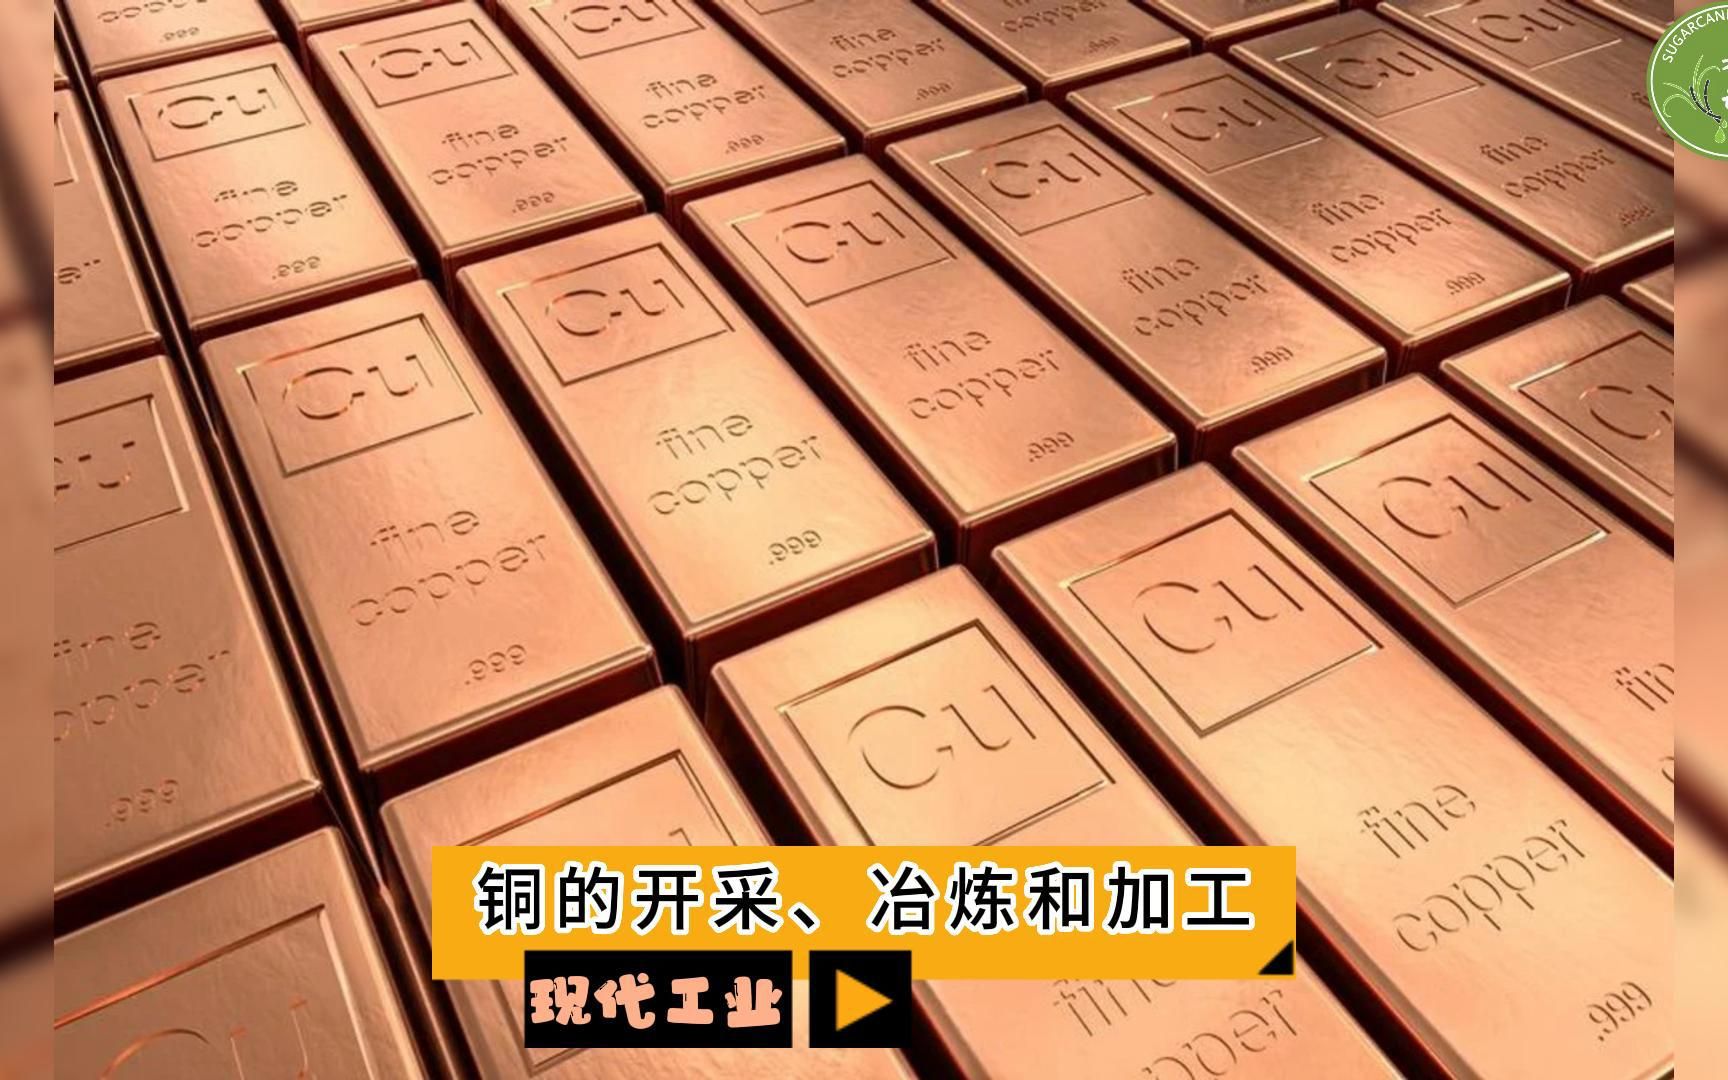 现代工业之——铜的开采、冶炼和加工（老王讲糖系列视频）